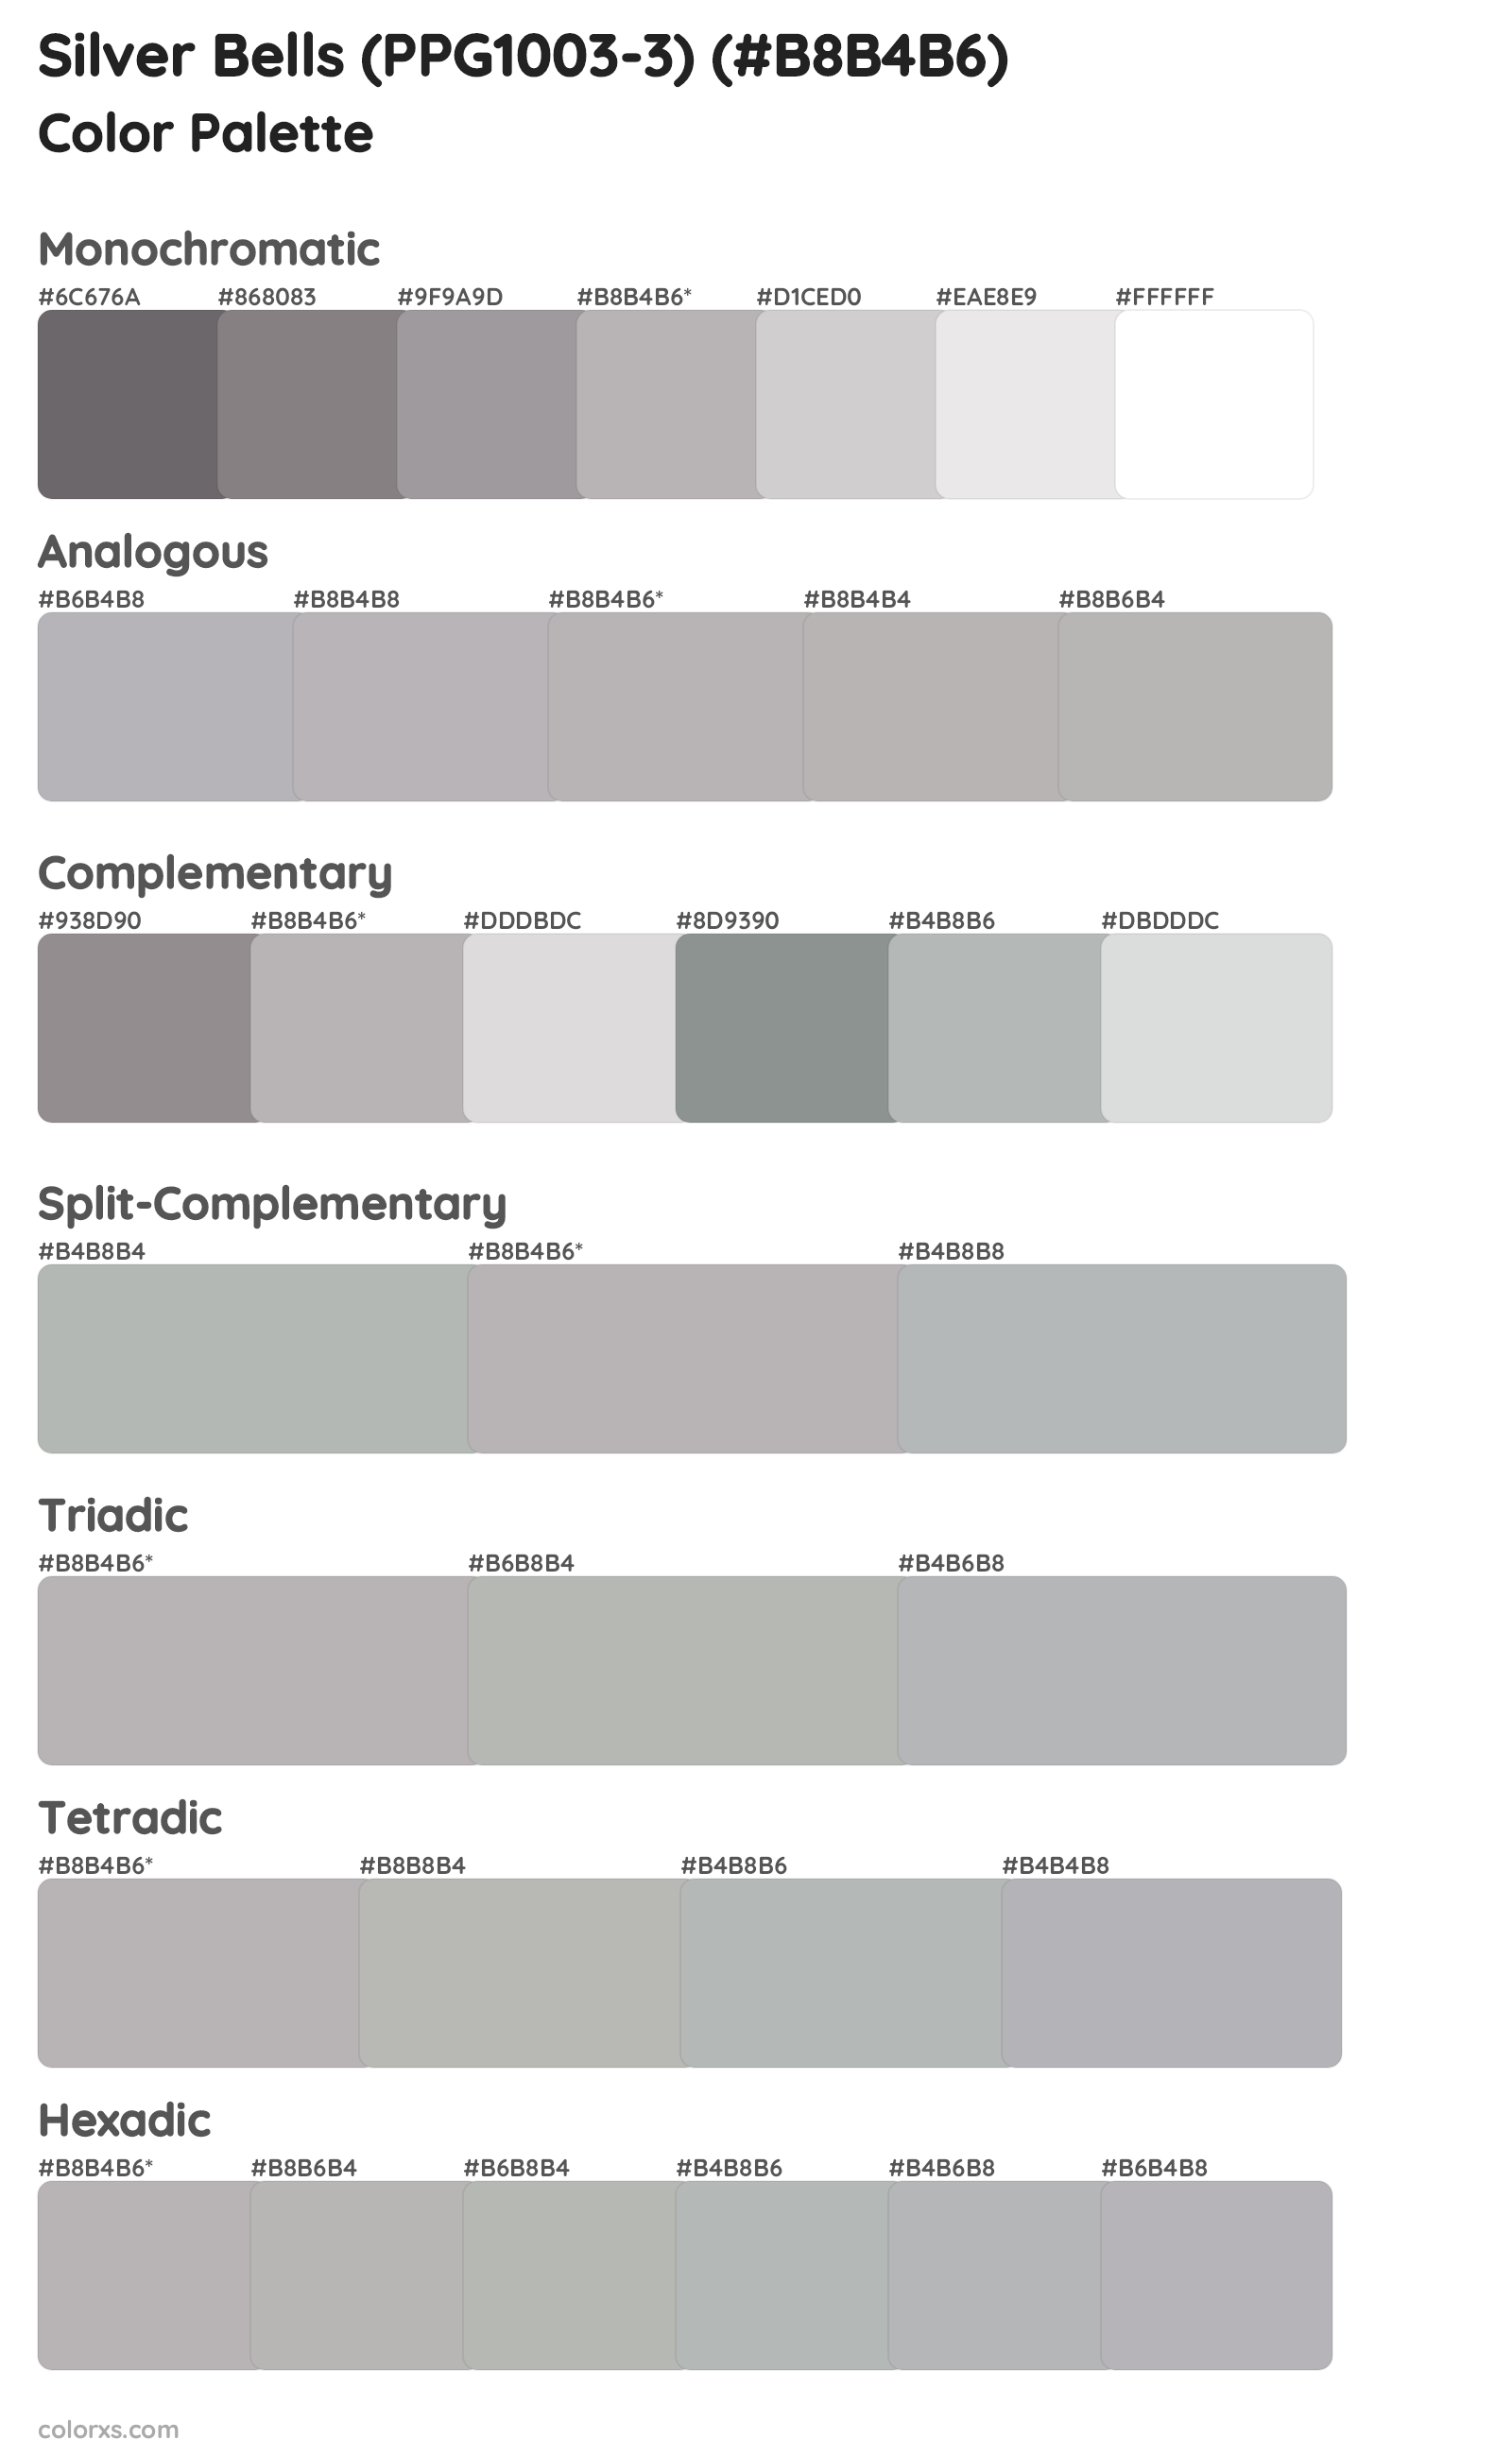 Silver Bells (PPG1003-3) Color Scheme Palettes